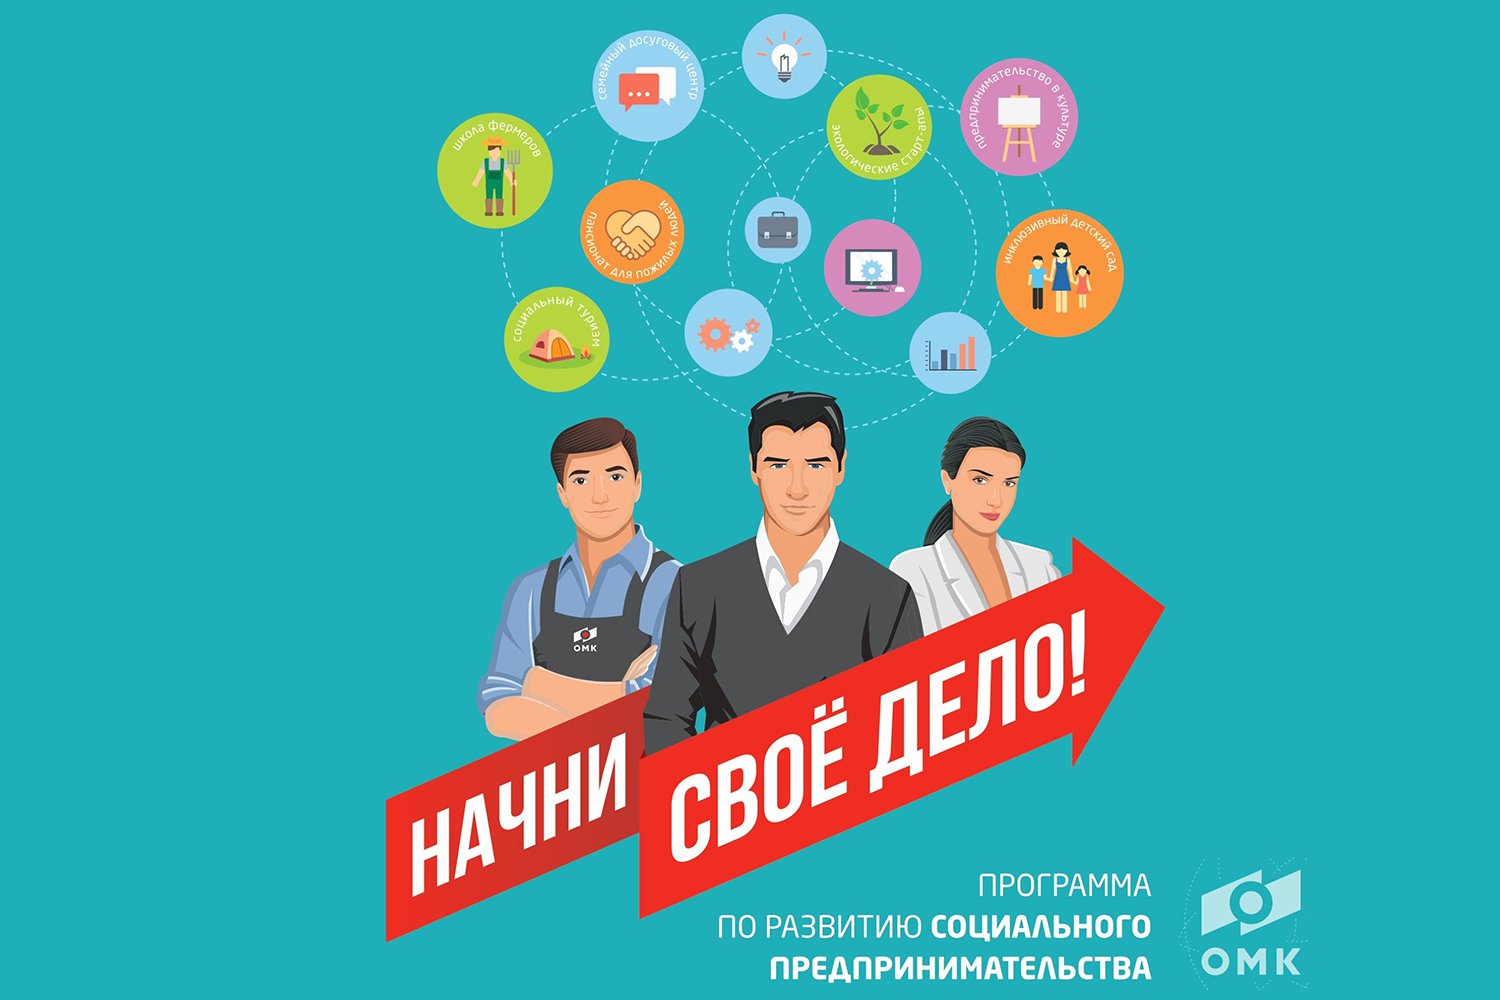 Программа по развитию социального предпринимательства «Начни своё дело» стартует в Выксе